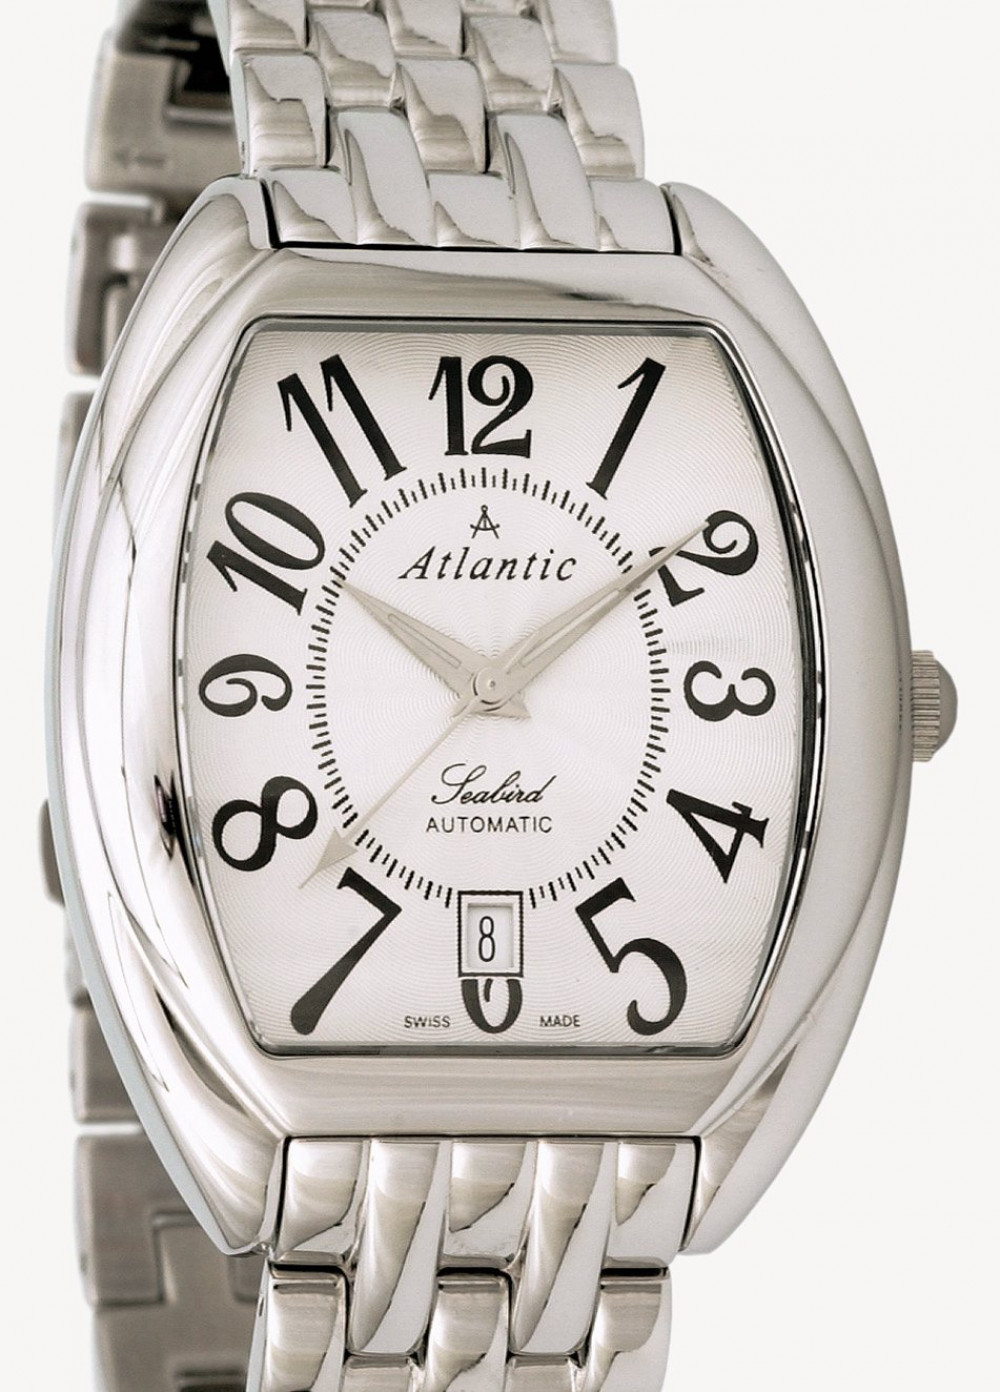 Zegarek firmy Atlantic, model Seabird Automatic